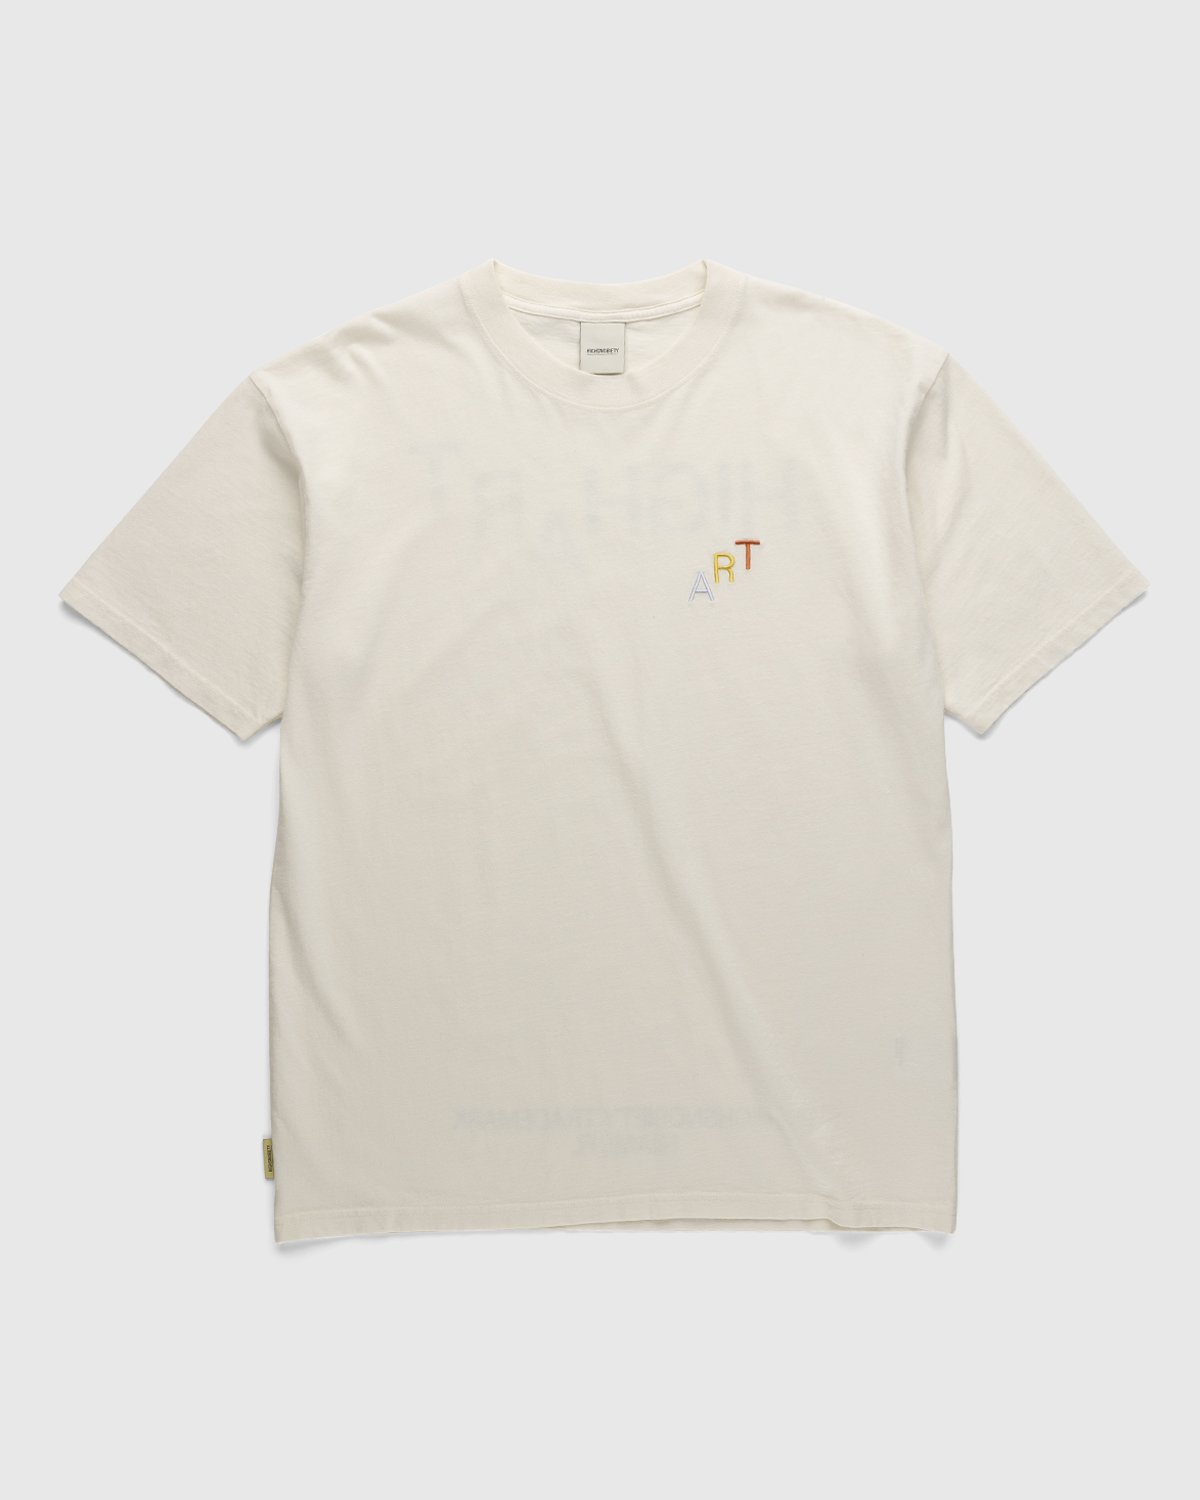 Highsnobiety - HIGHArt Rainbow T-Shirt White - Clothing - White - Image 2